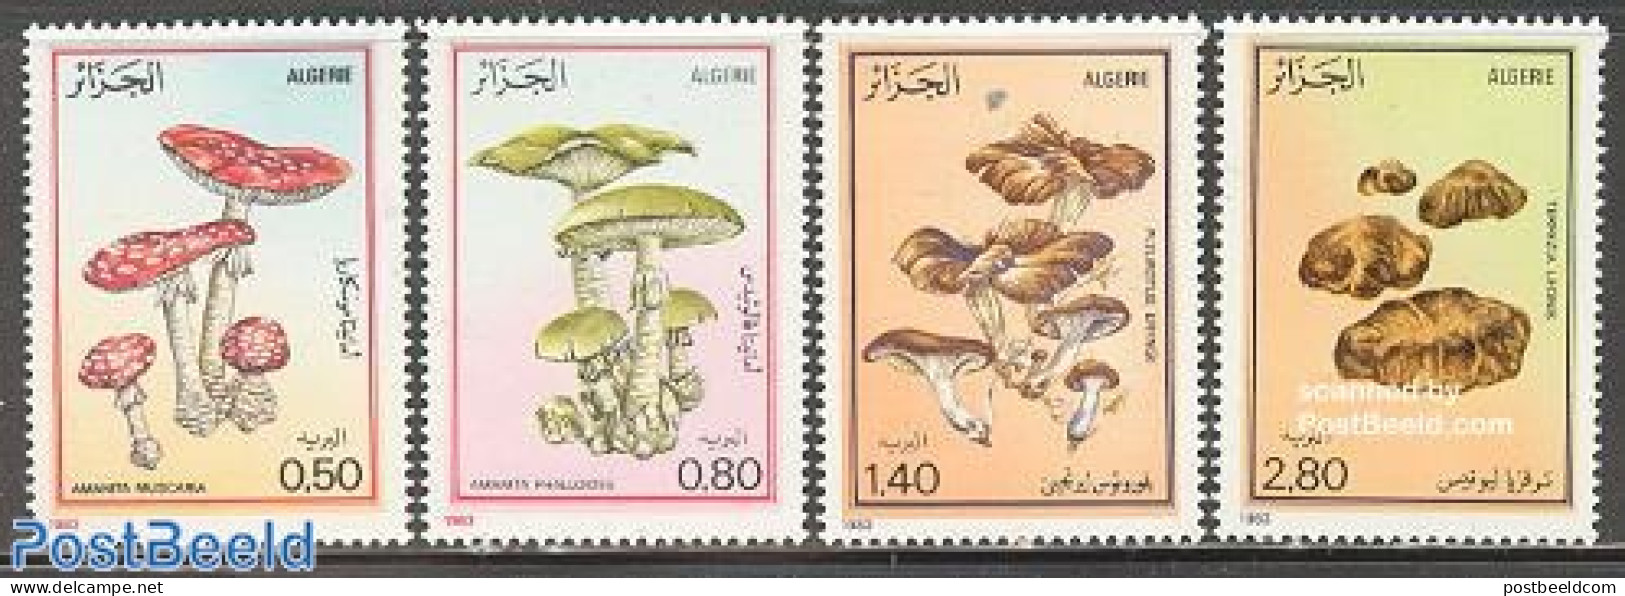 Algeria 1983 Mushrooms 4v, Mint NH, Nature - Mushrooms - Ongebruikt